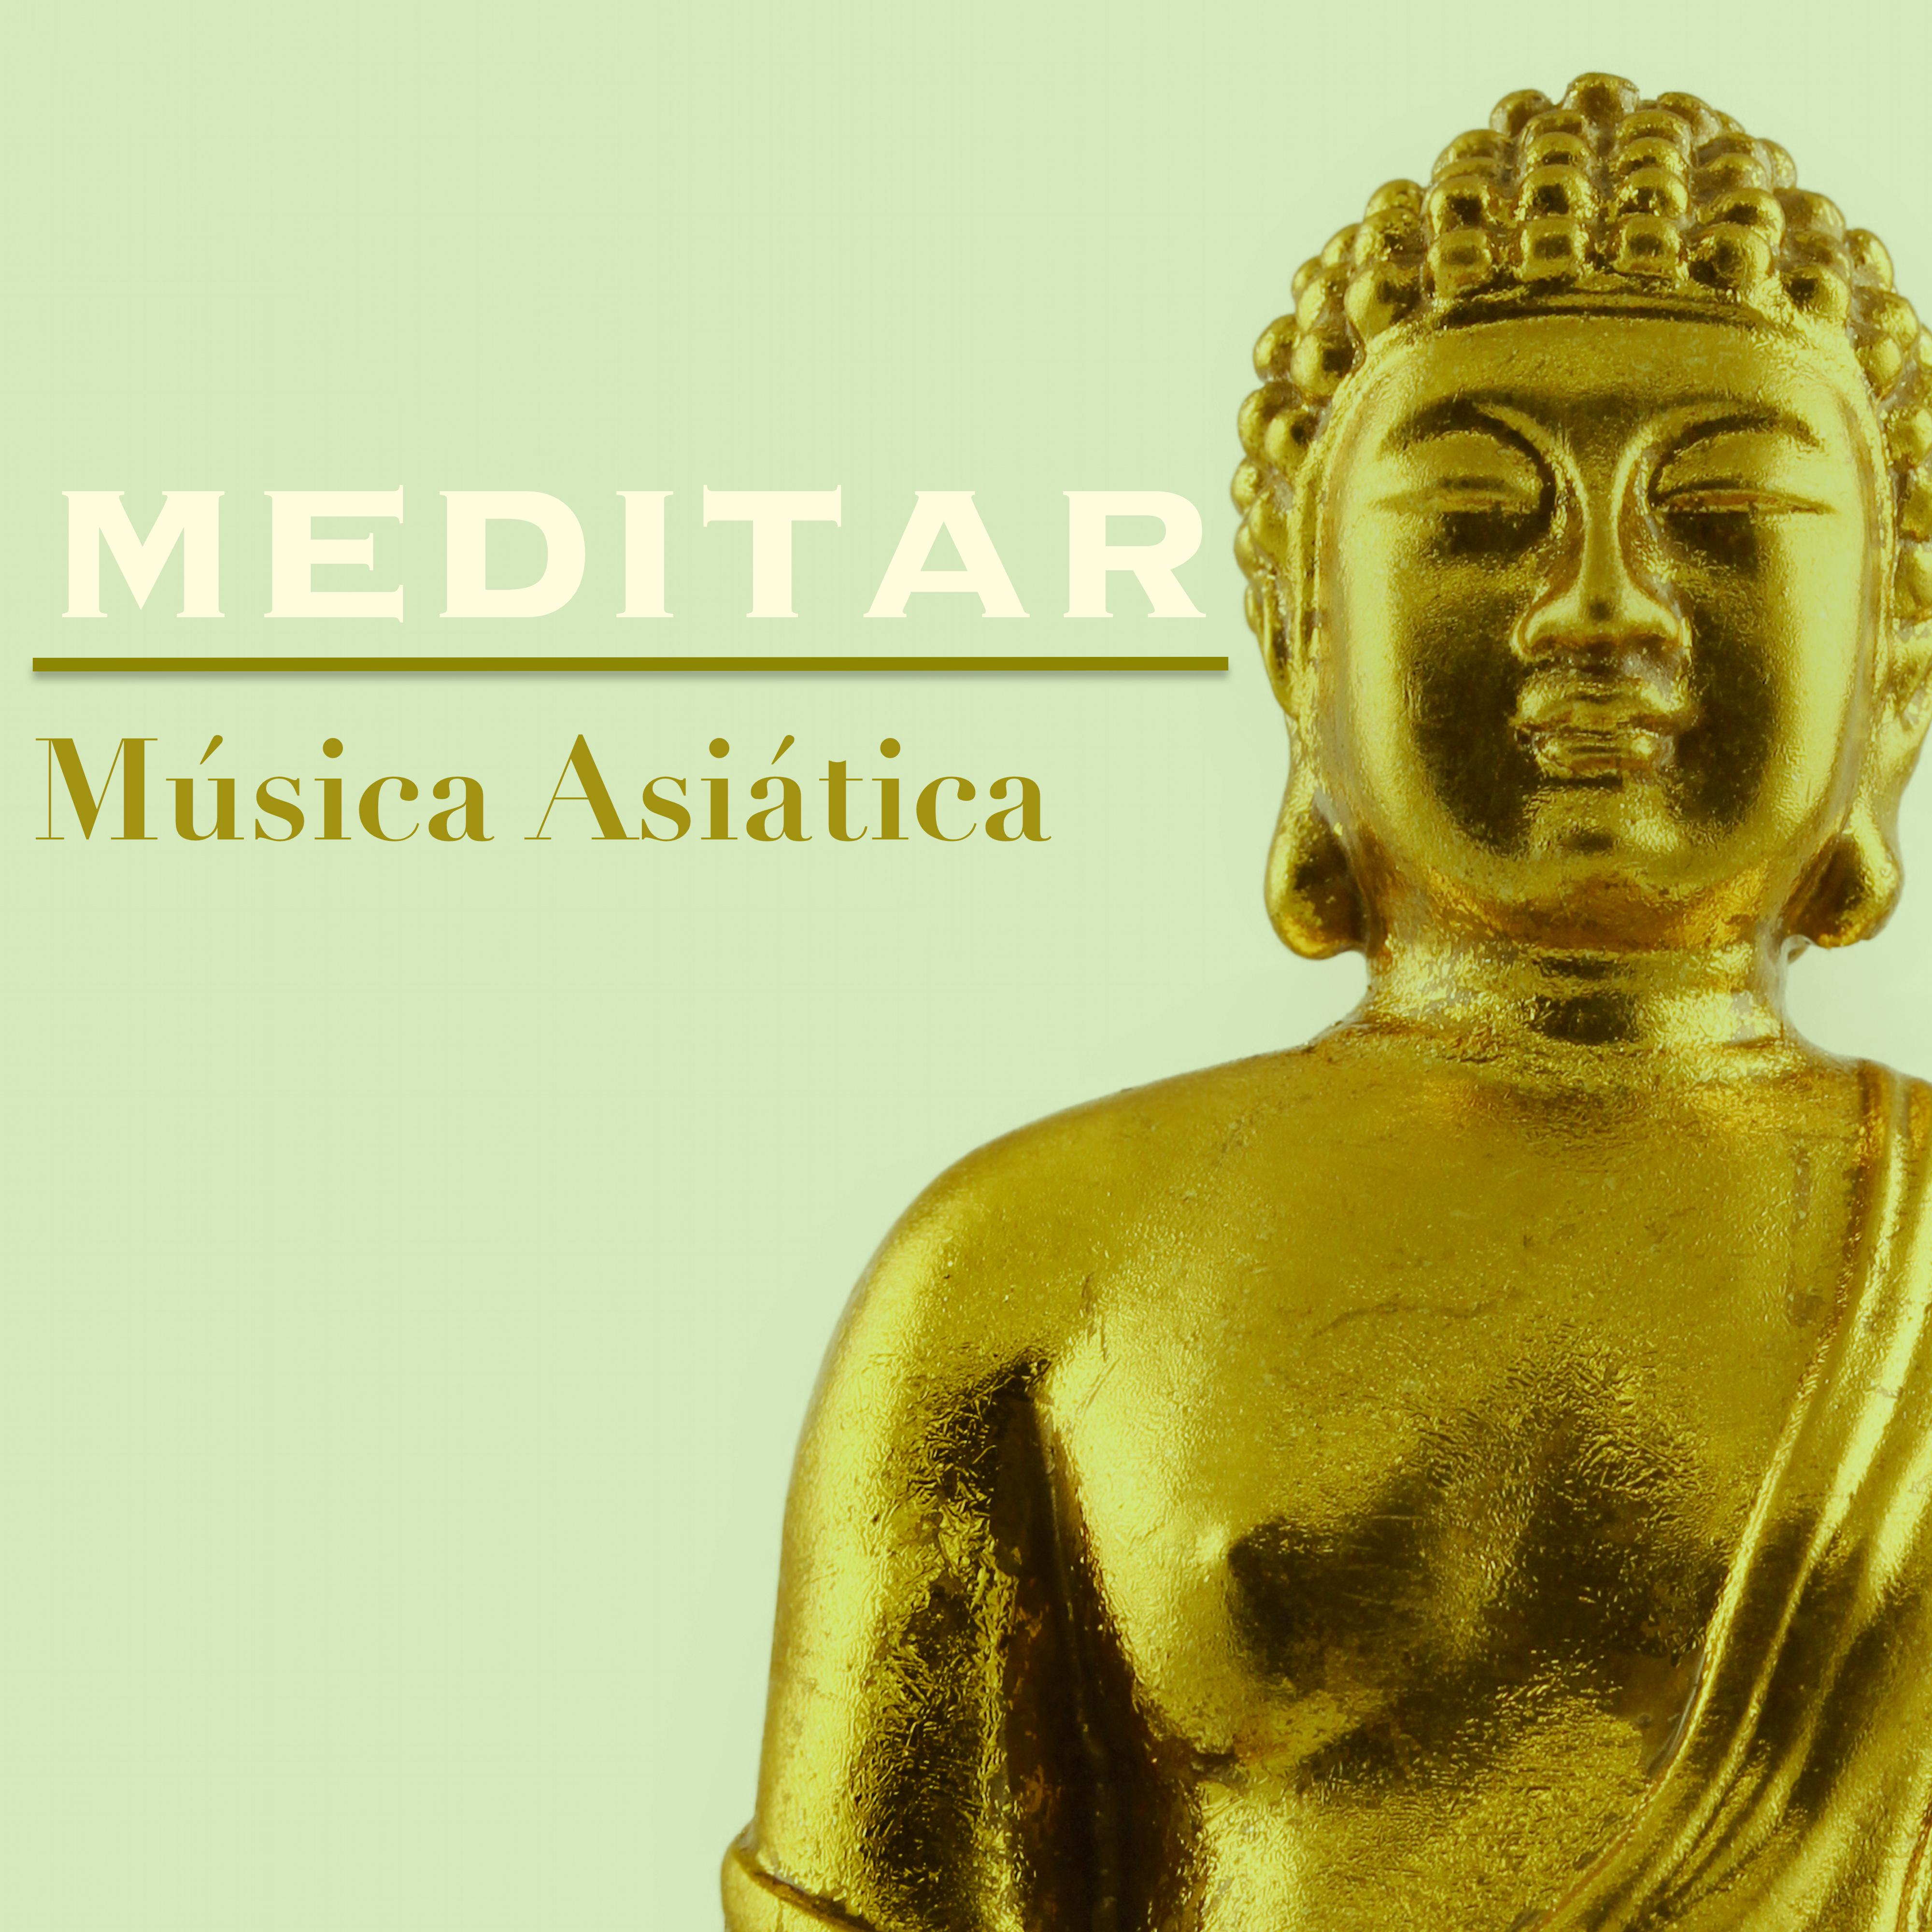 Meditar: Música Asiática y Reiki para Meditación, Relajaciòn y Yoga Saludo al Sol